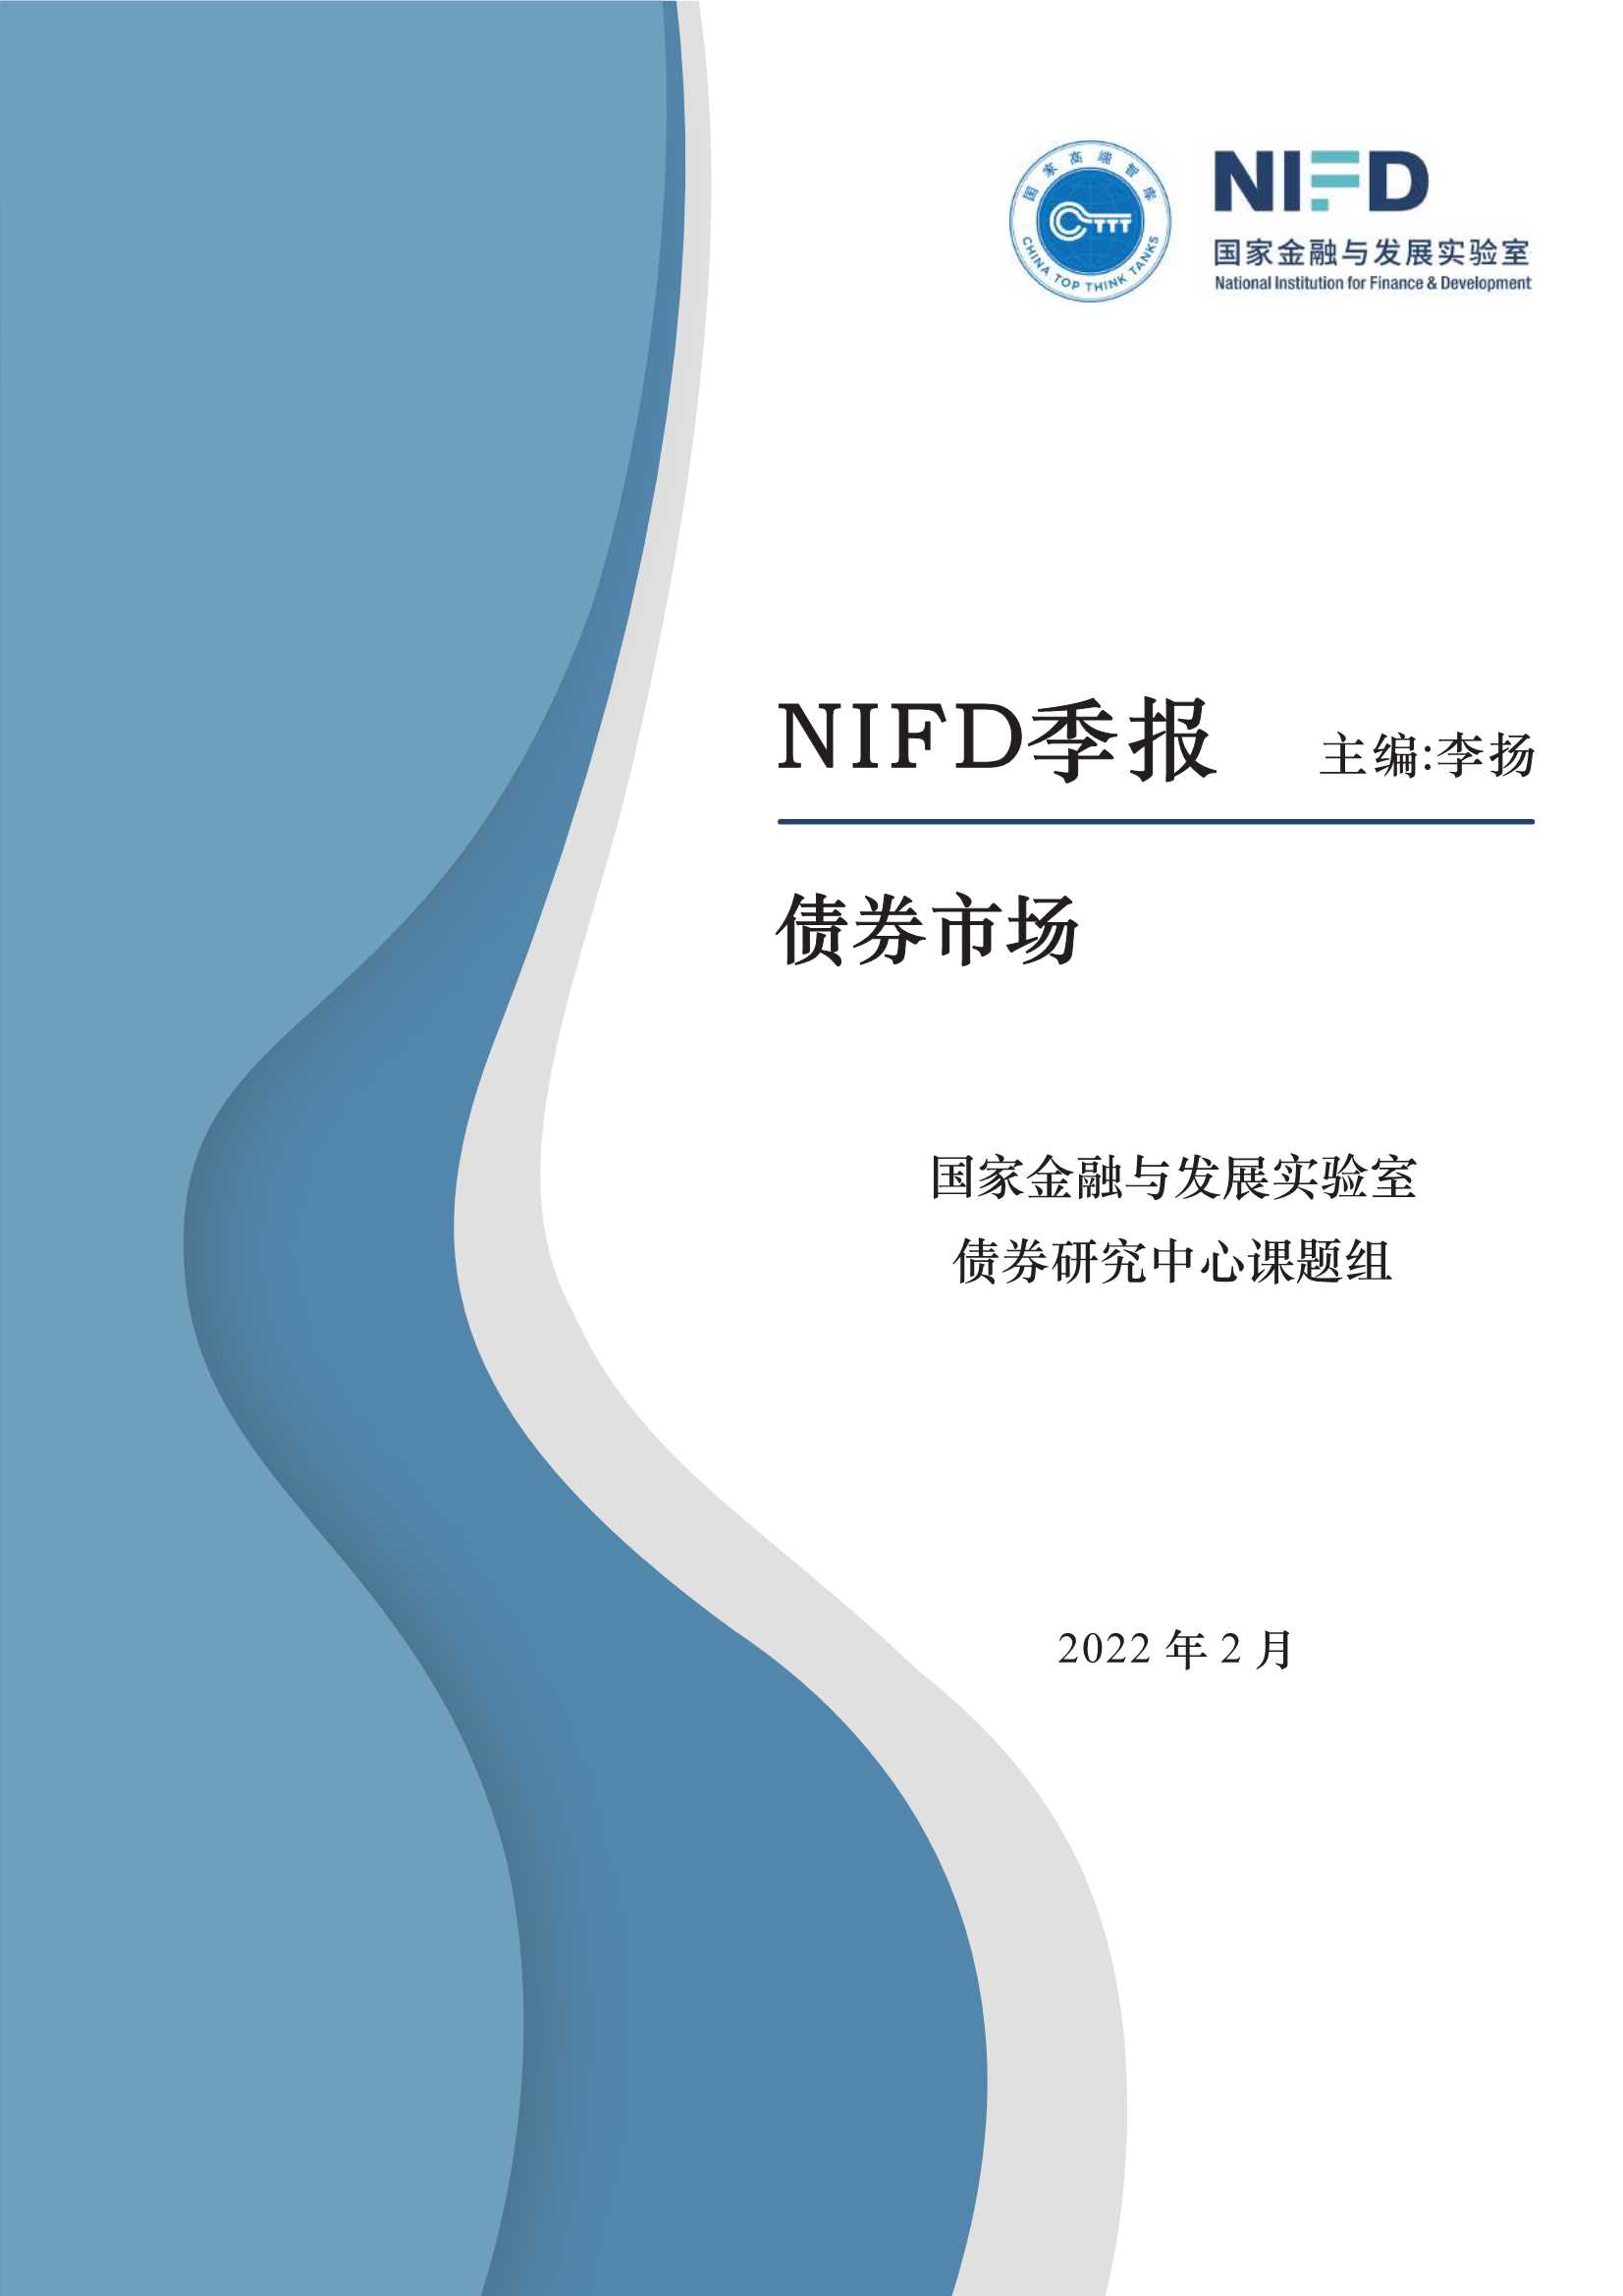 NIFD-“稳”字当头 行稳方致远——2021年债券市场分析与2022年展望-2022.02-22页